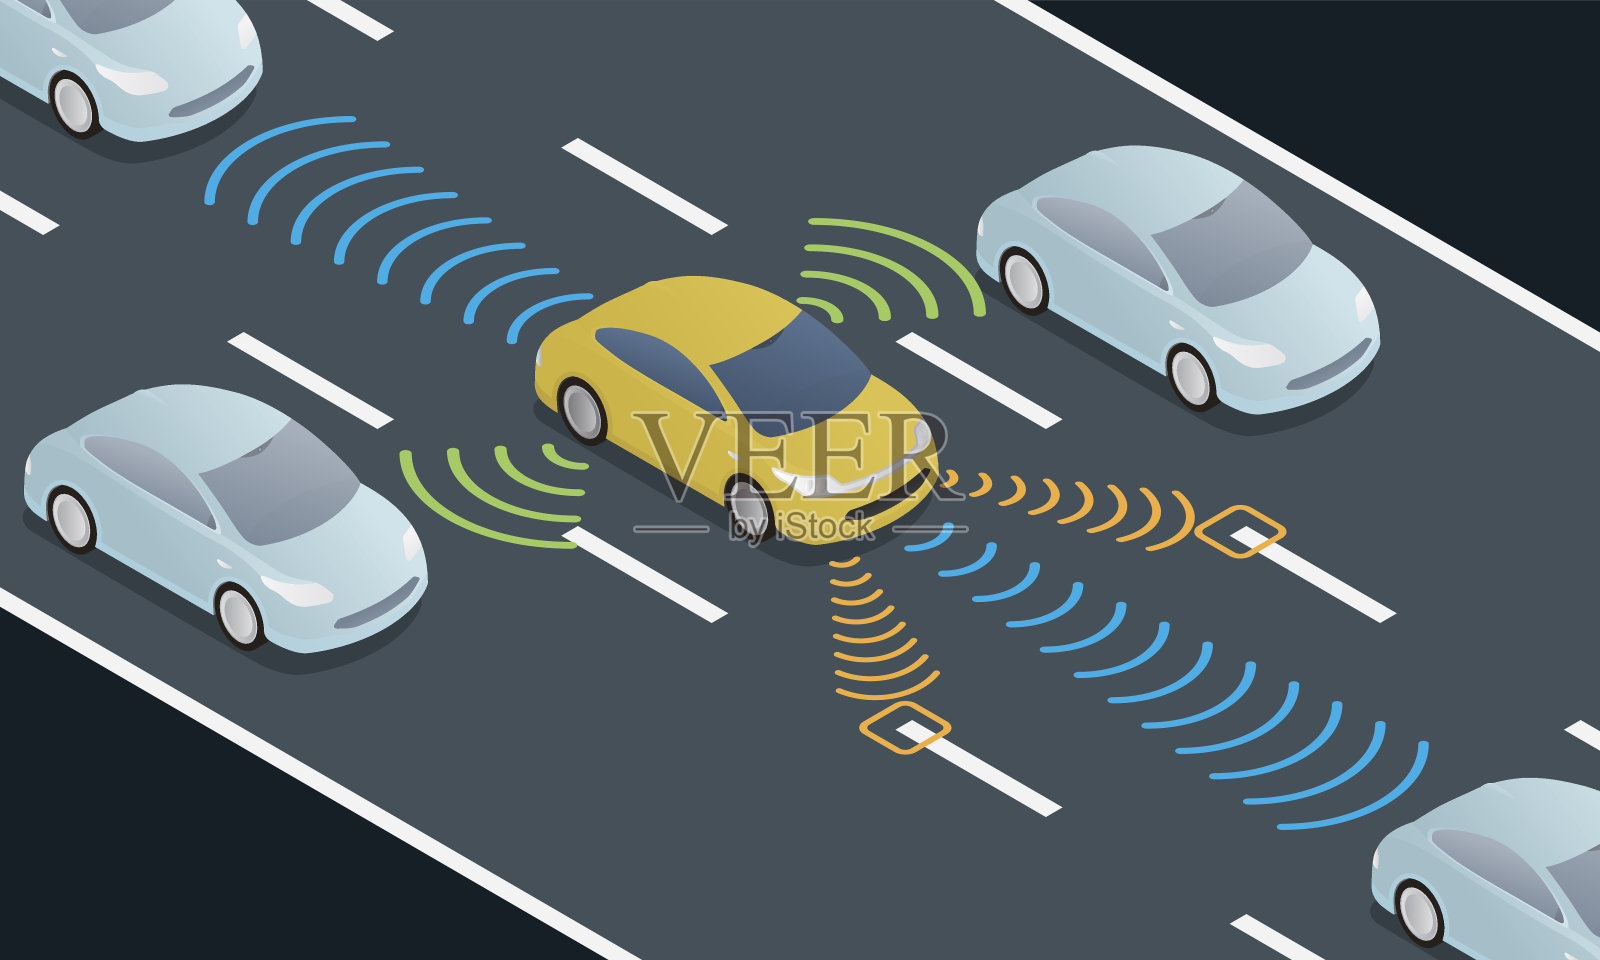 道路上的自动驾驶汽车和传感系统、无人驾驶汽车、自动驾驶汽车插画图片素材